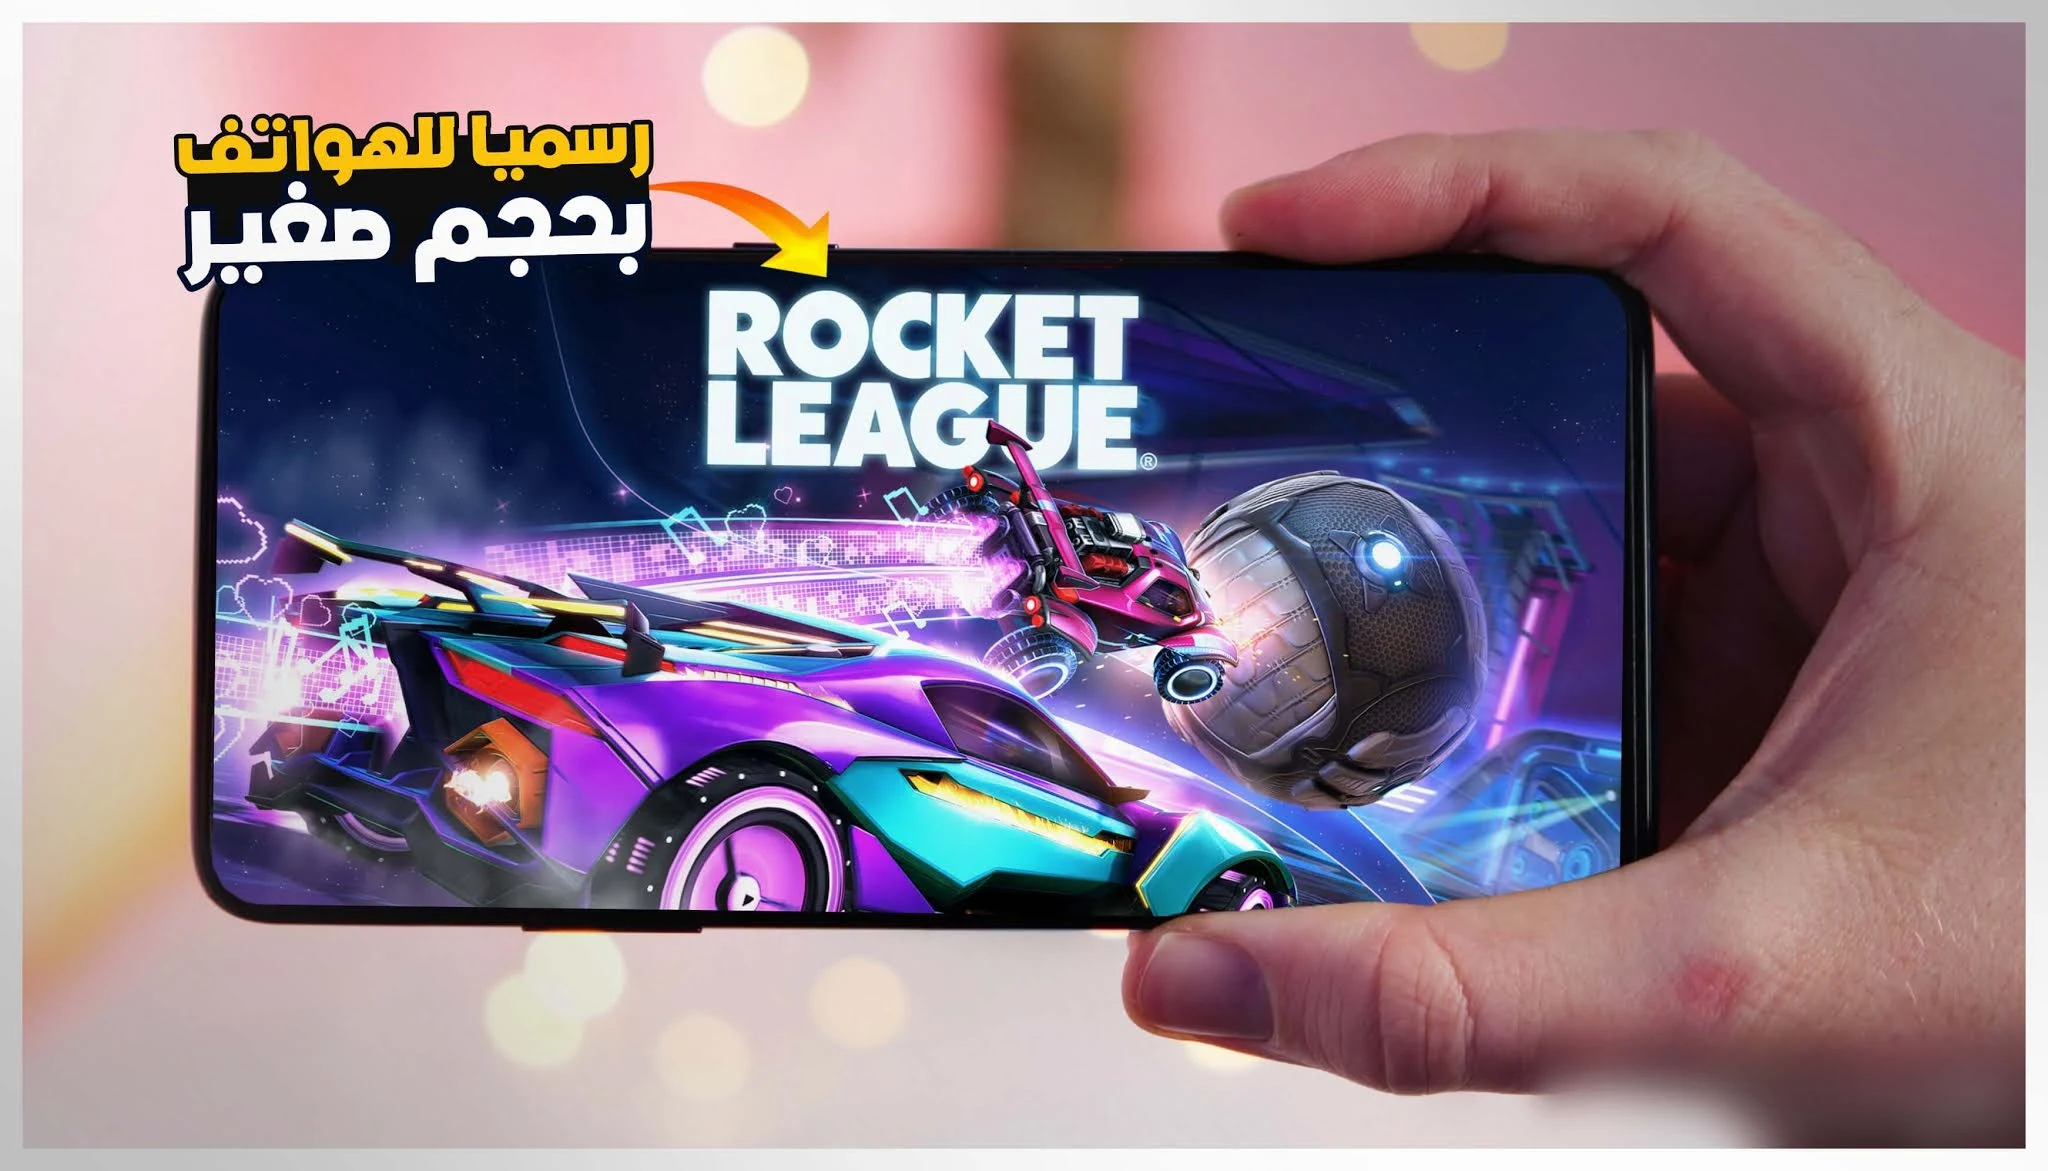 رسميا تحميل لعبة Rocket League الاصلية للاندرويد نسخة PC للاجهزة الضعيفة والمتوسطة | rocket league sideswipe apk